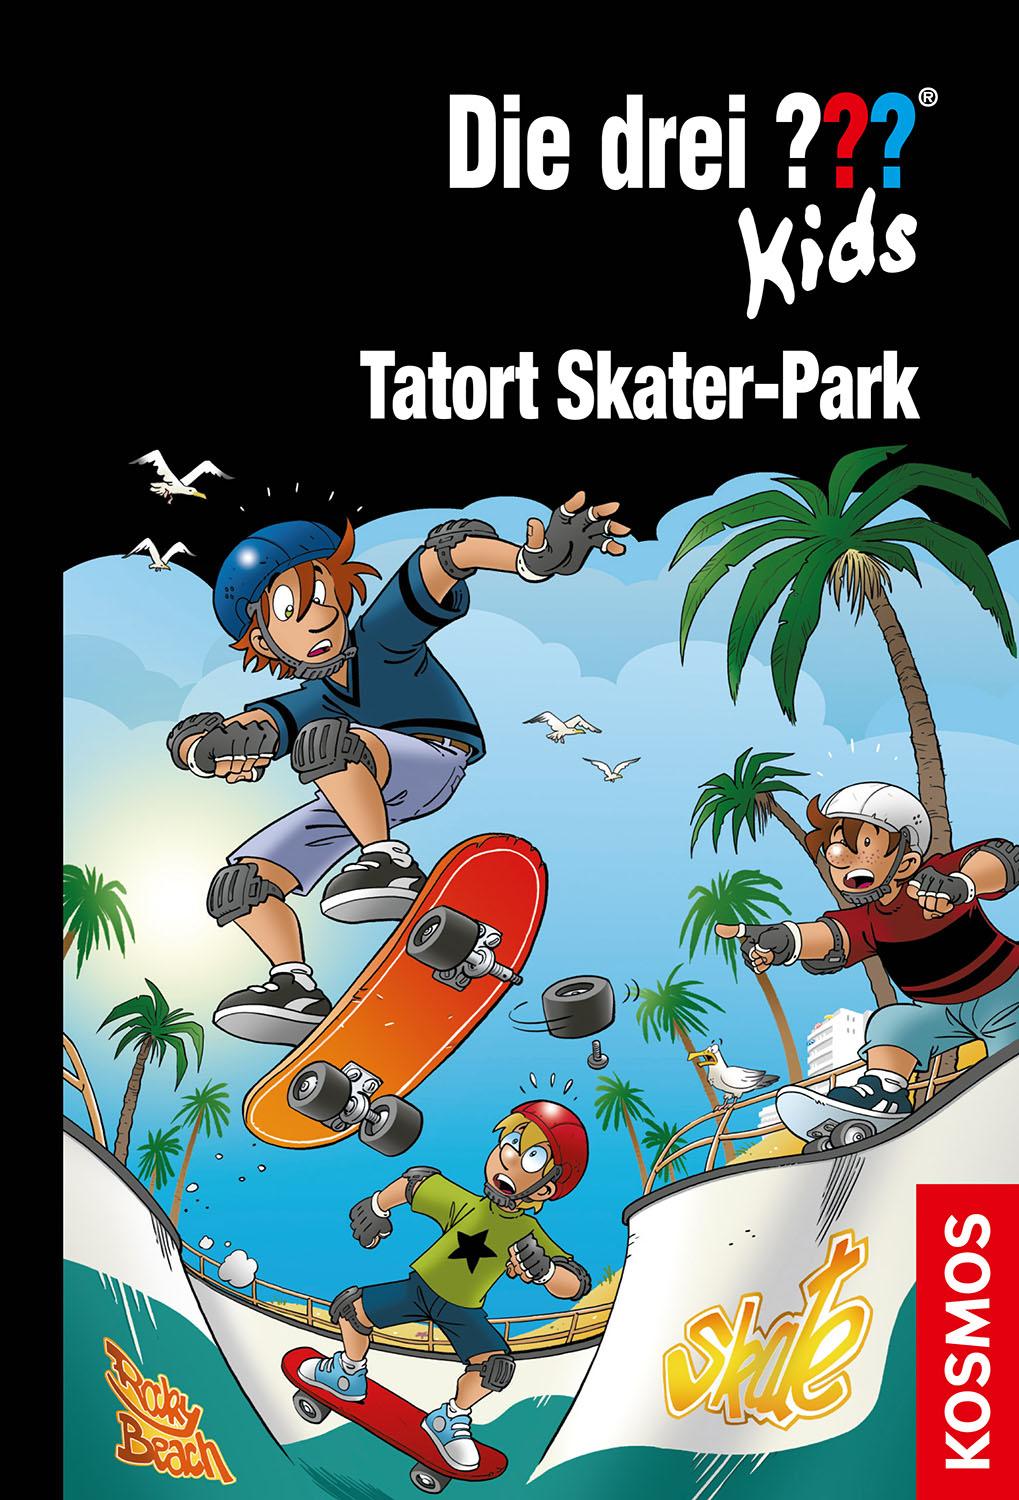 Die drei ''' Kids Buch: Tatort Skater-Park